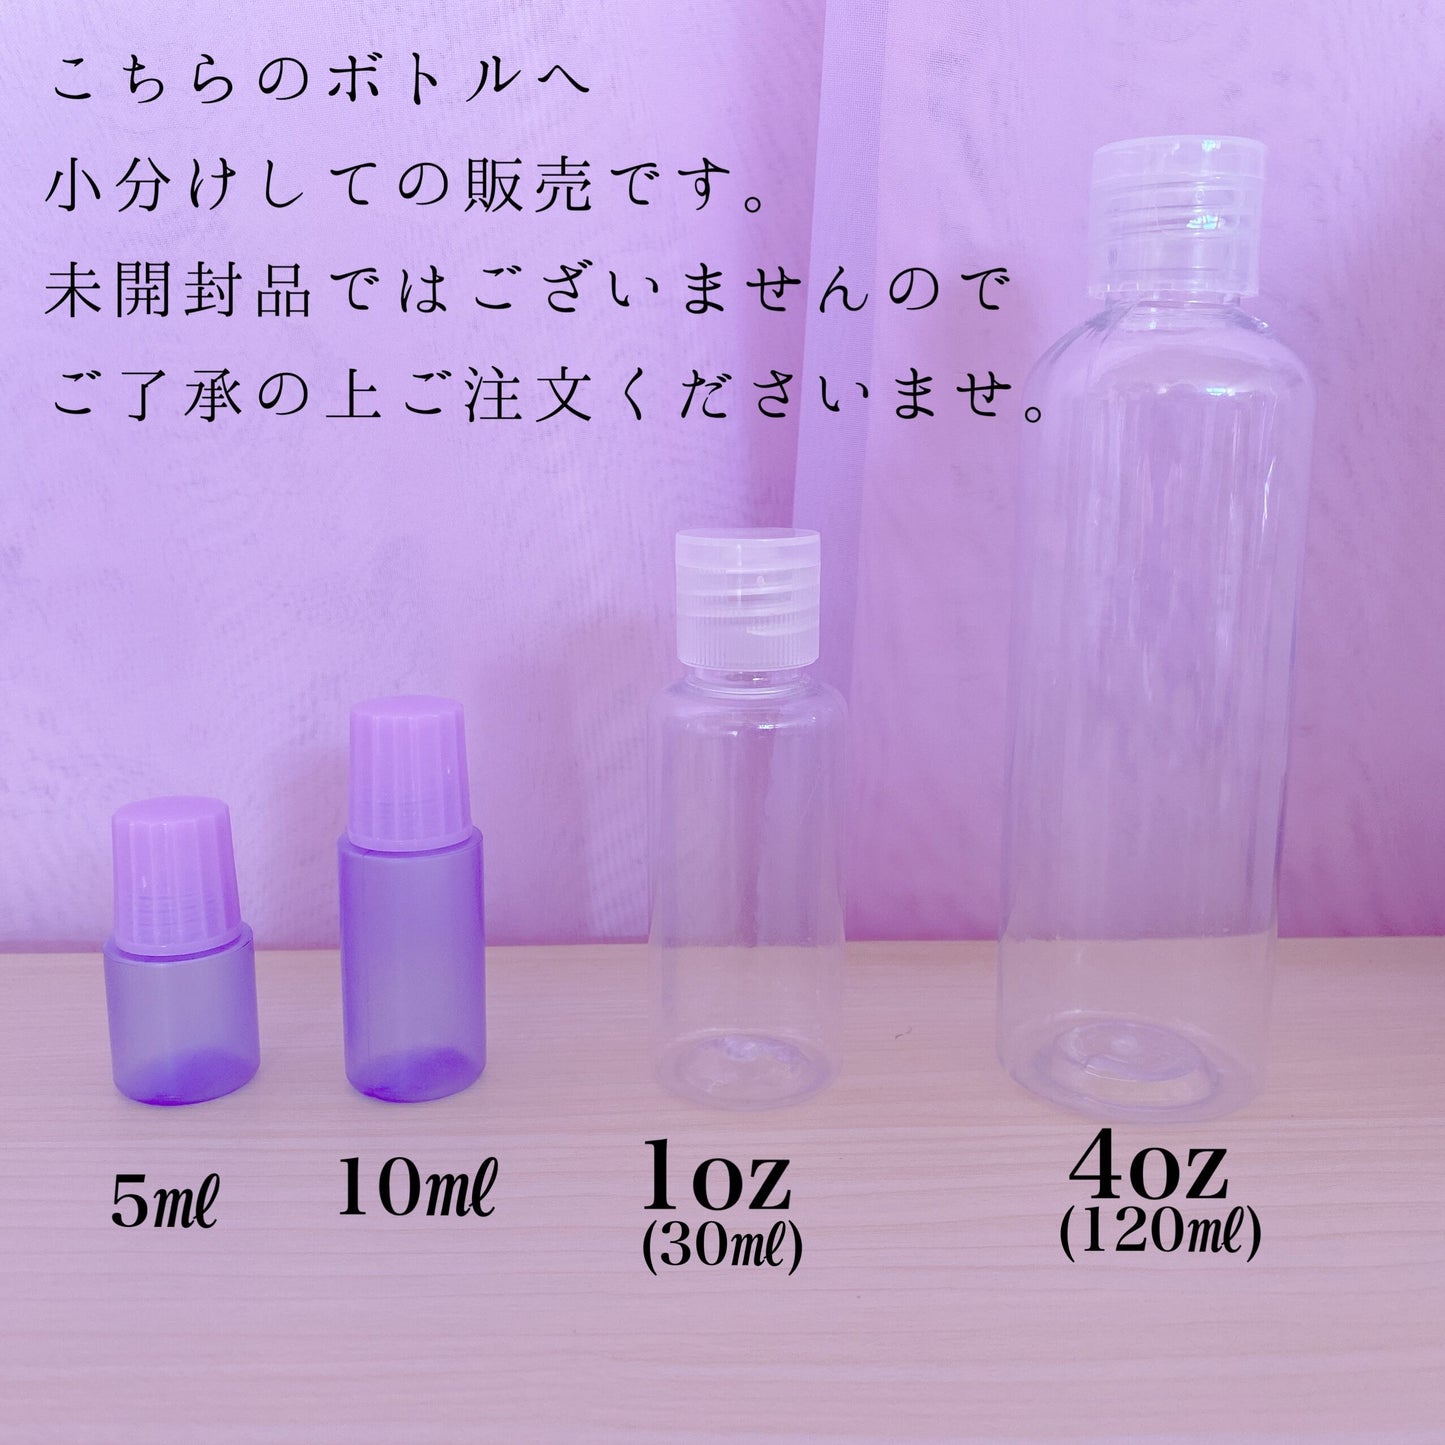 【Relaxation】アロマ&パフューム フレグランスオイル スライム香料